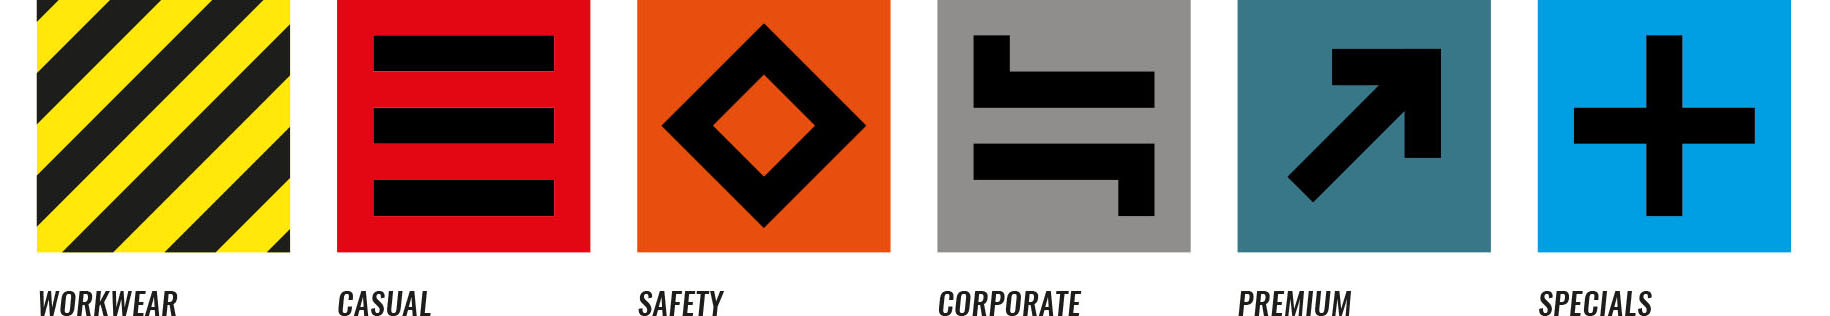 Brandworks. Bureau voor creatieve branding